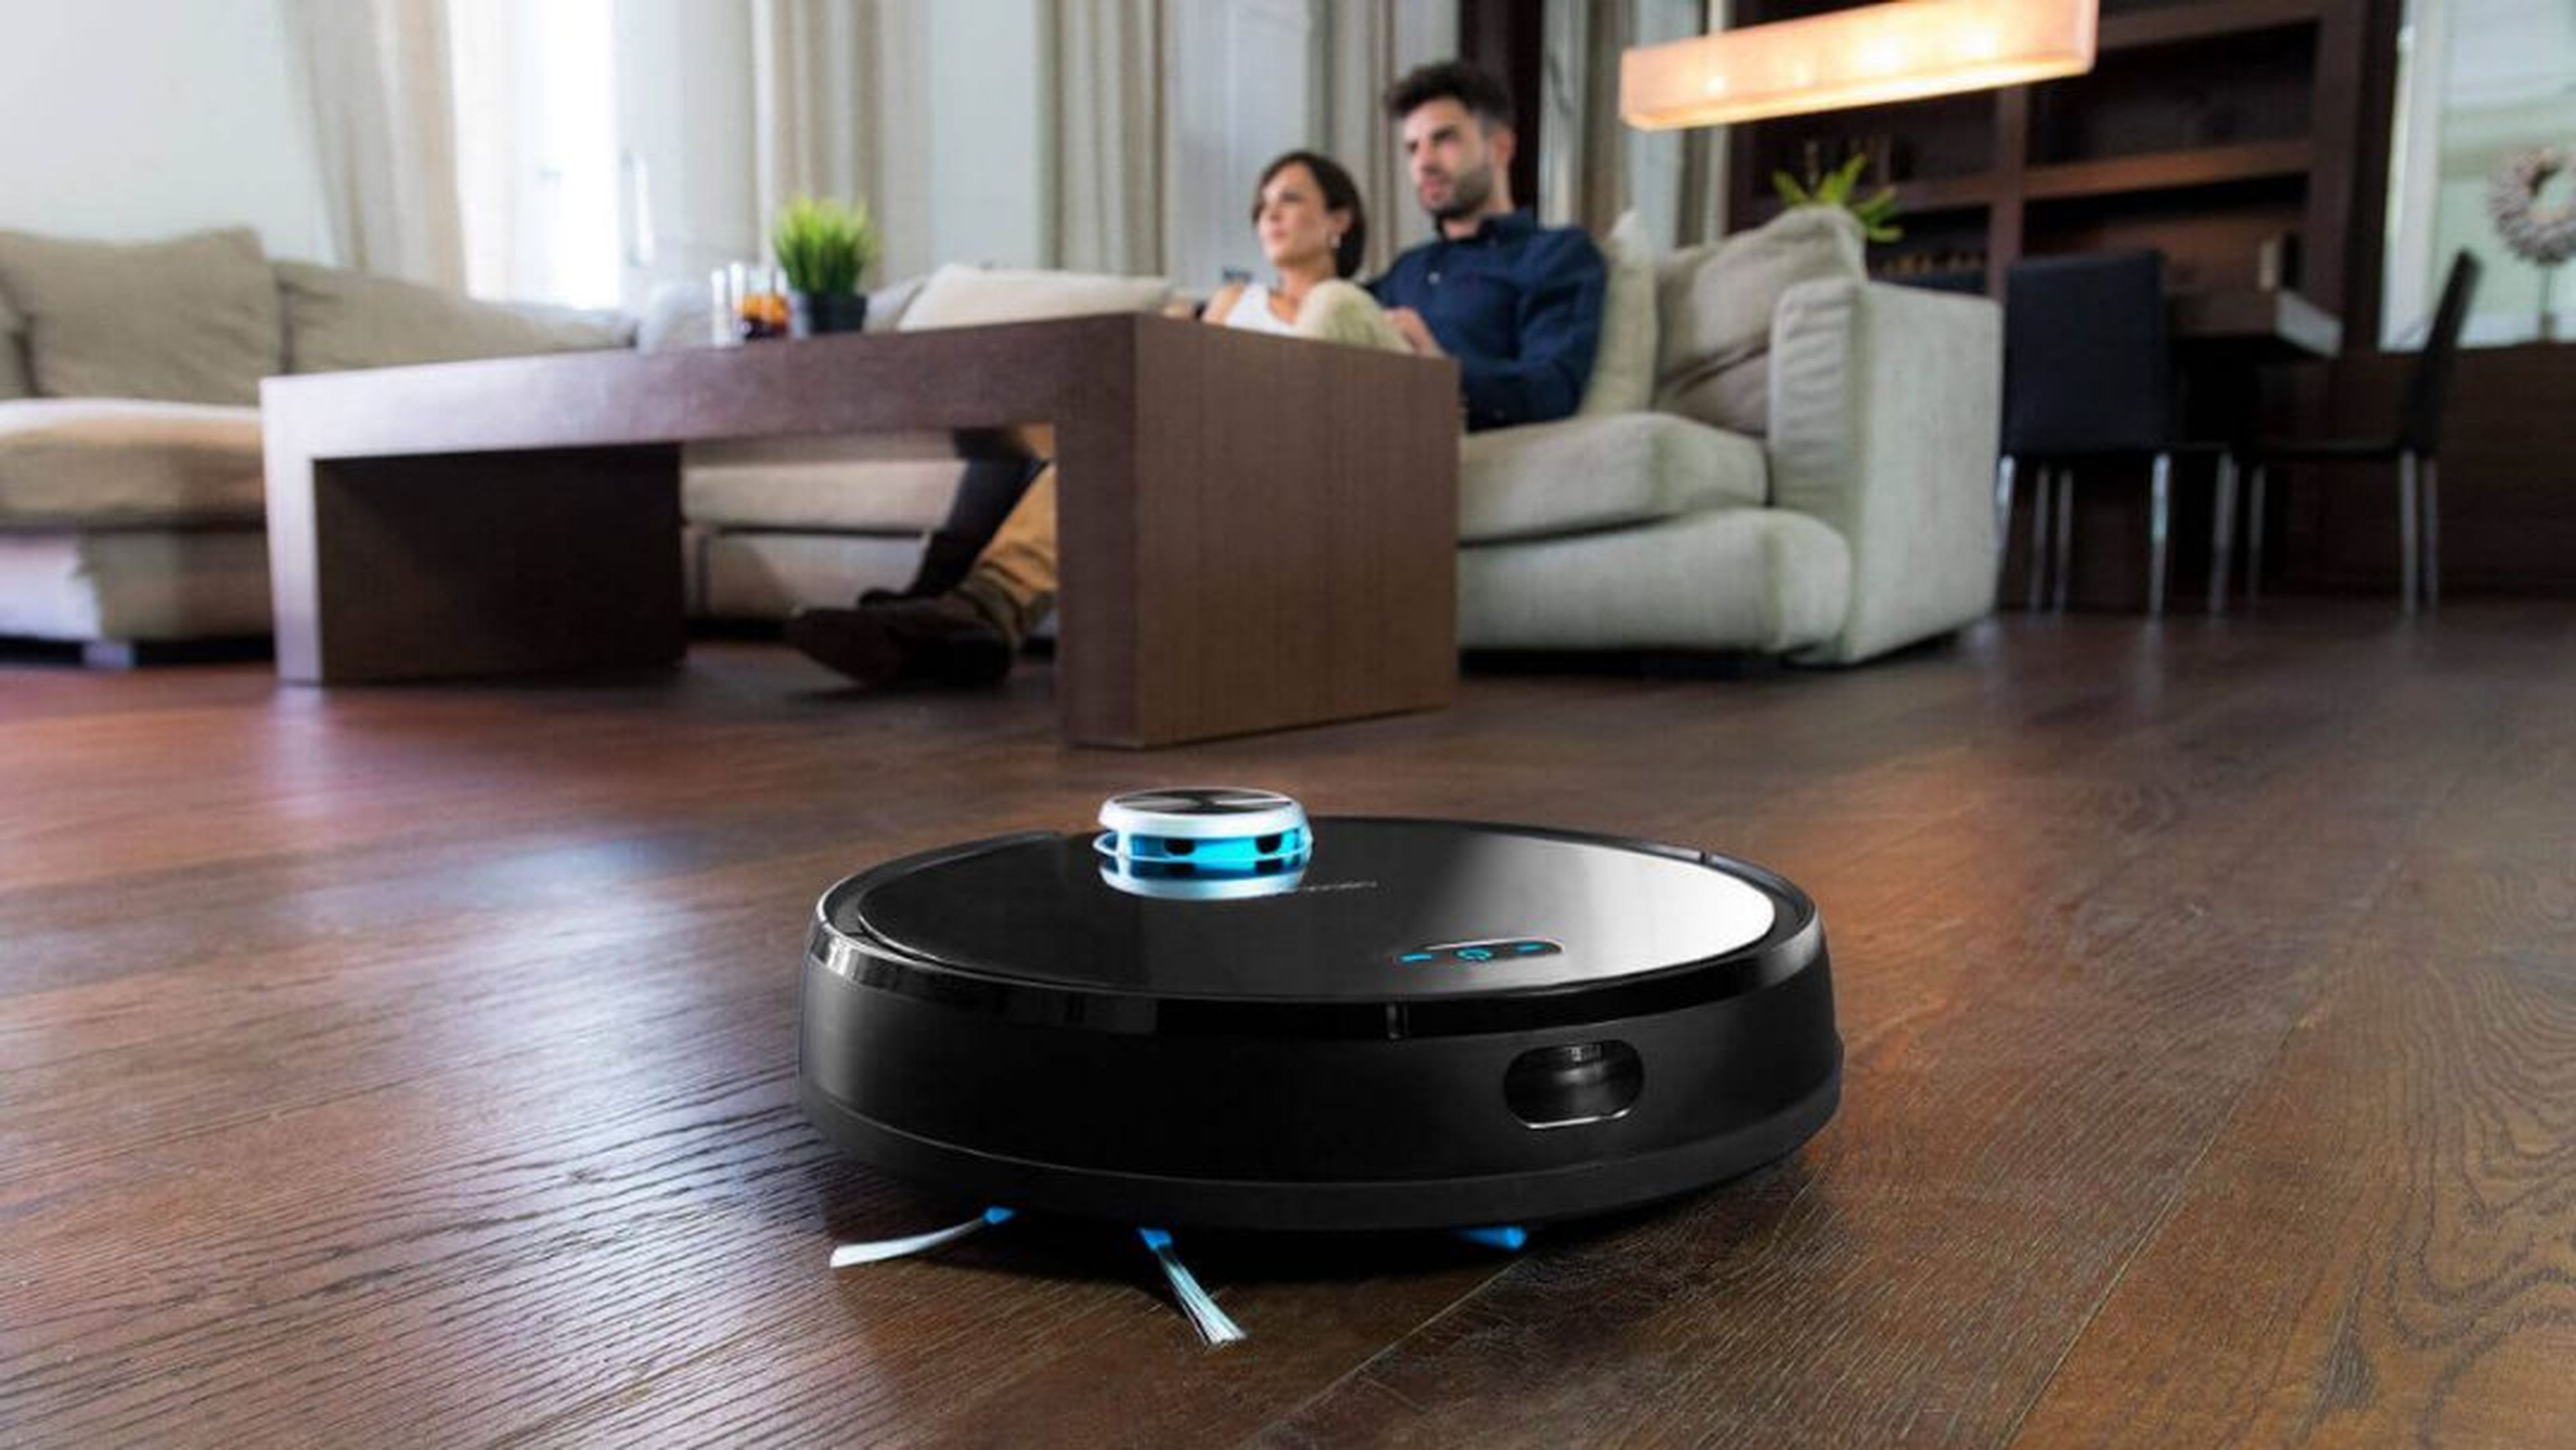 cruzar Correspondiente a Microordenador Ofertas Amazon, Conga 3090 robot aspirador alternativa a Roomba (-30%) |  Business Insider España